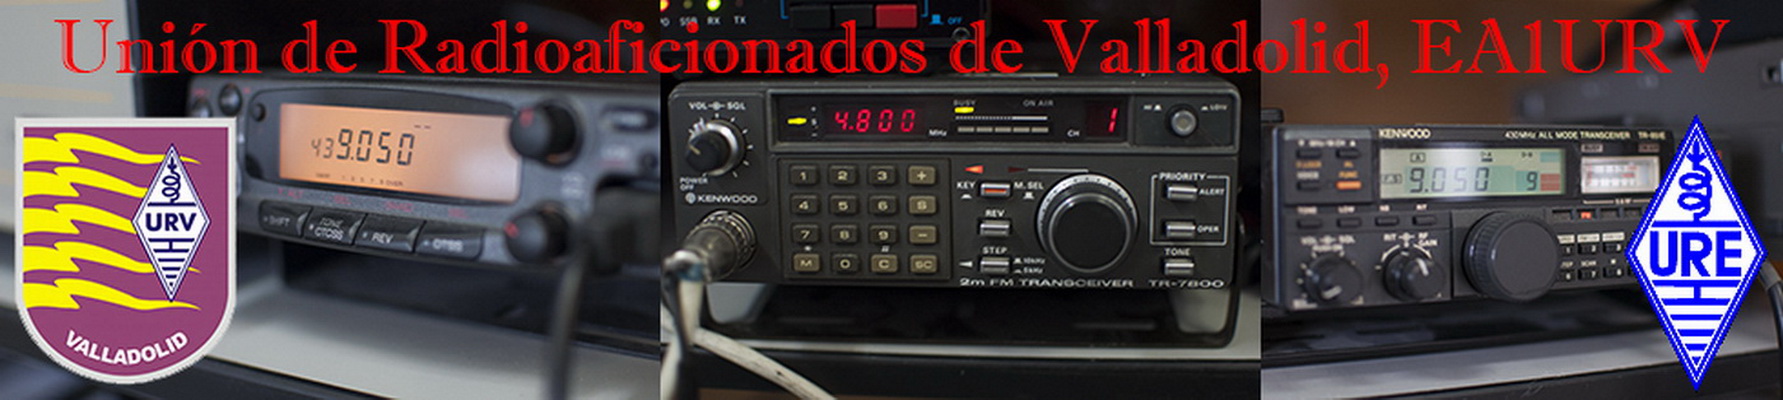 Unión de Radioaficionados de Valladolid